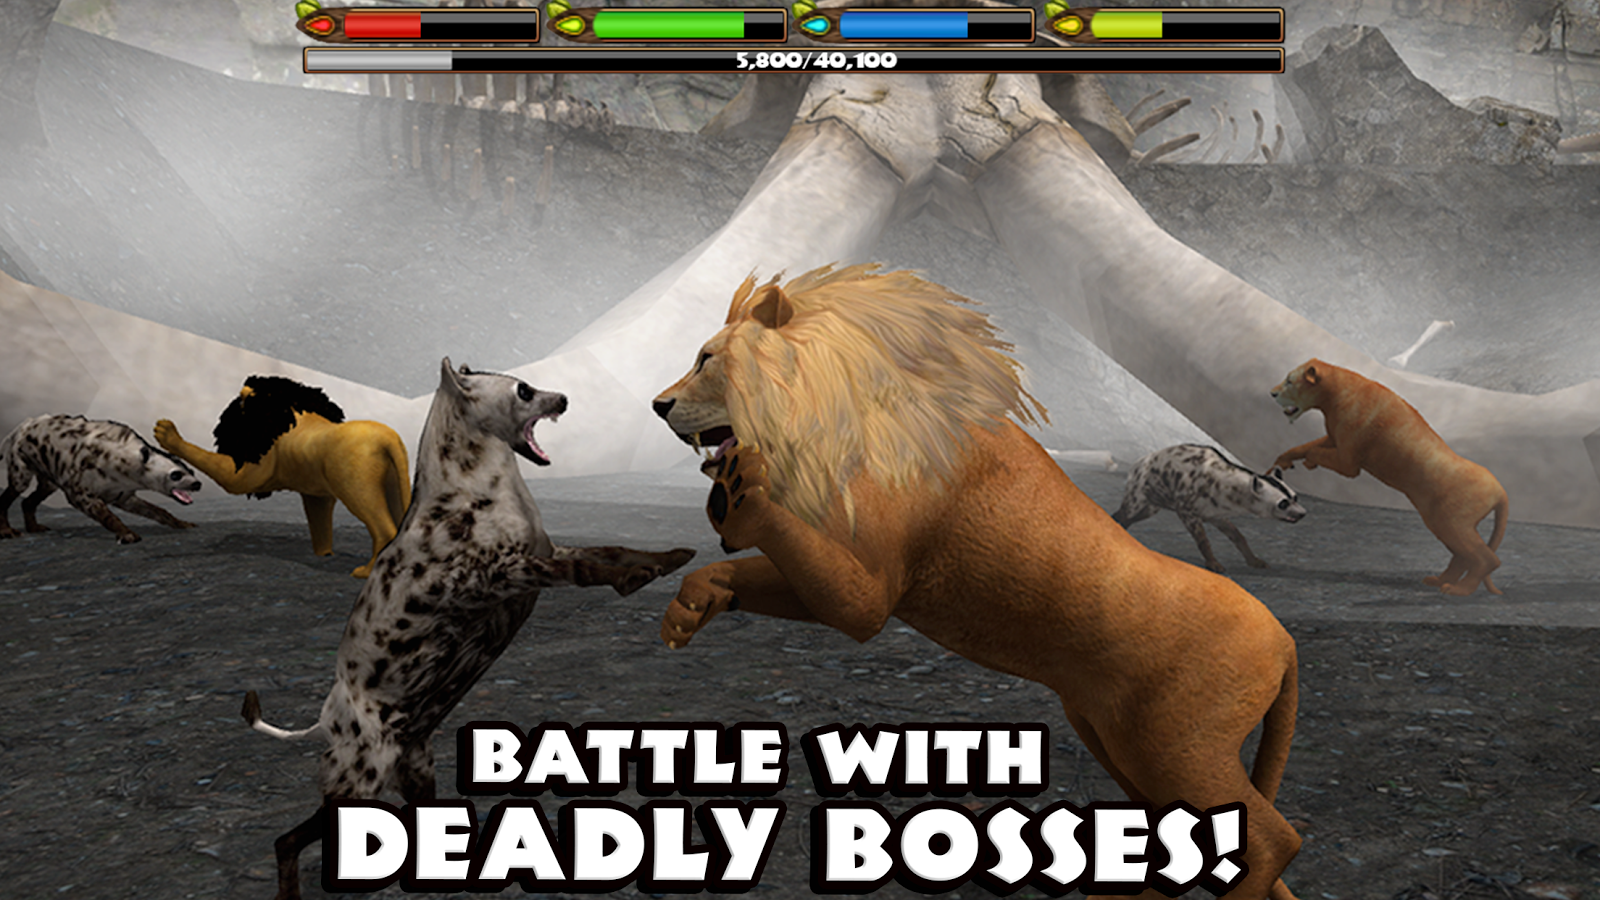    Ultimate Lion Simulator- screenshot  